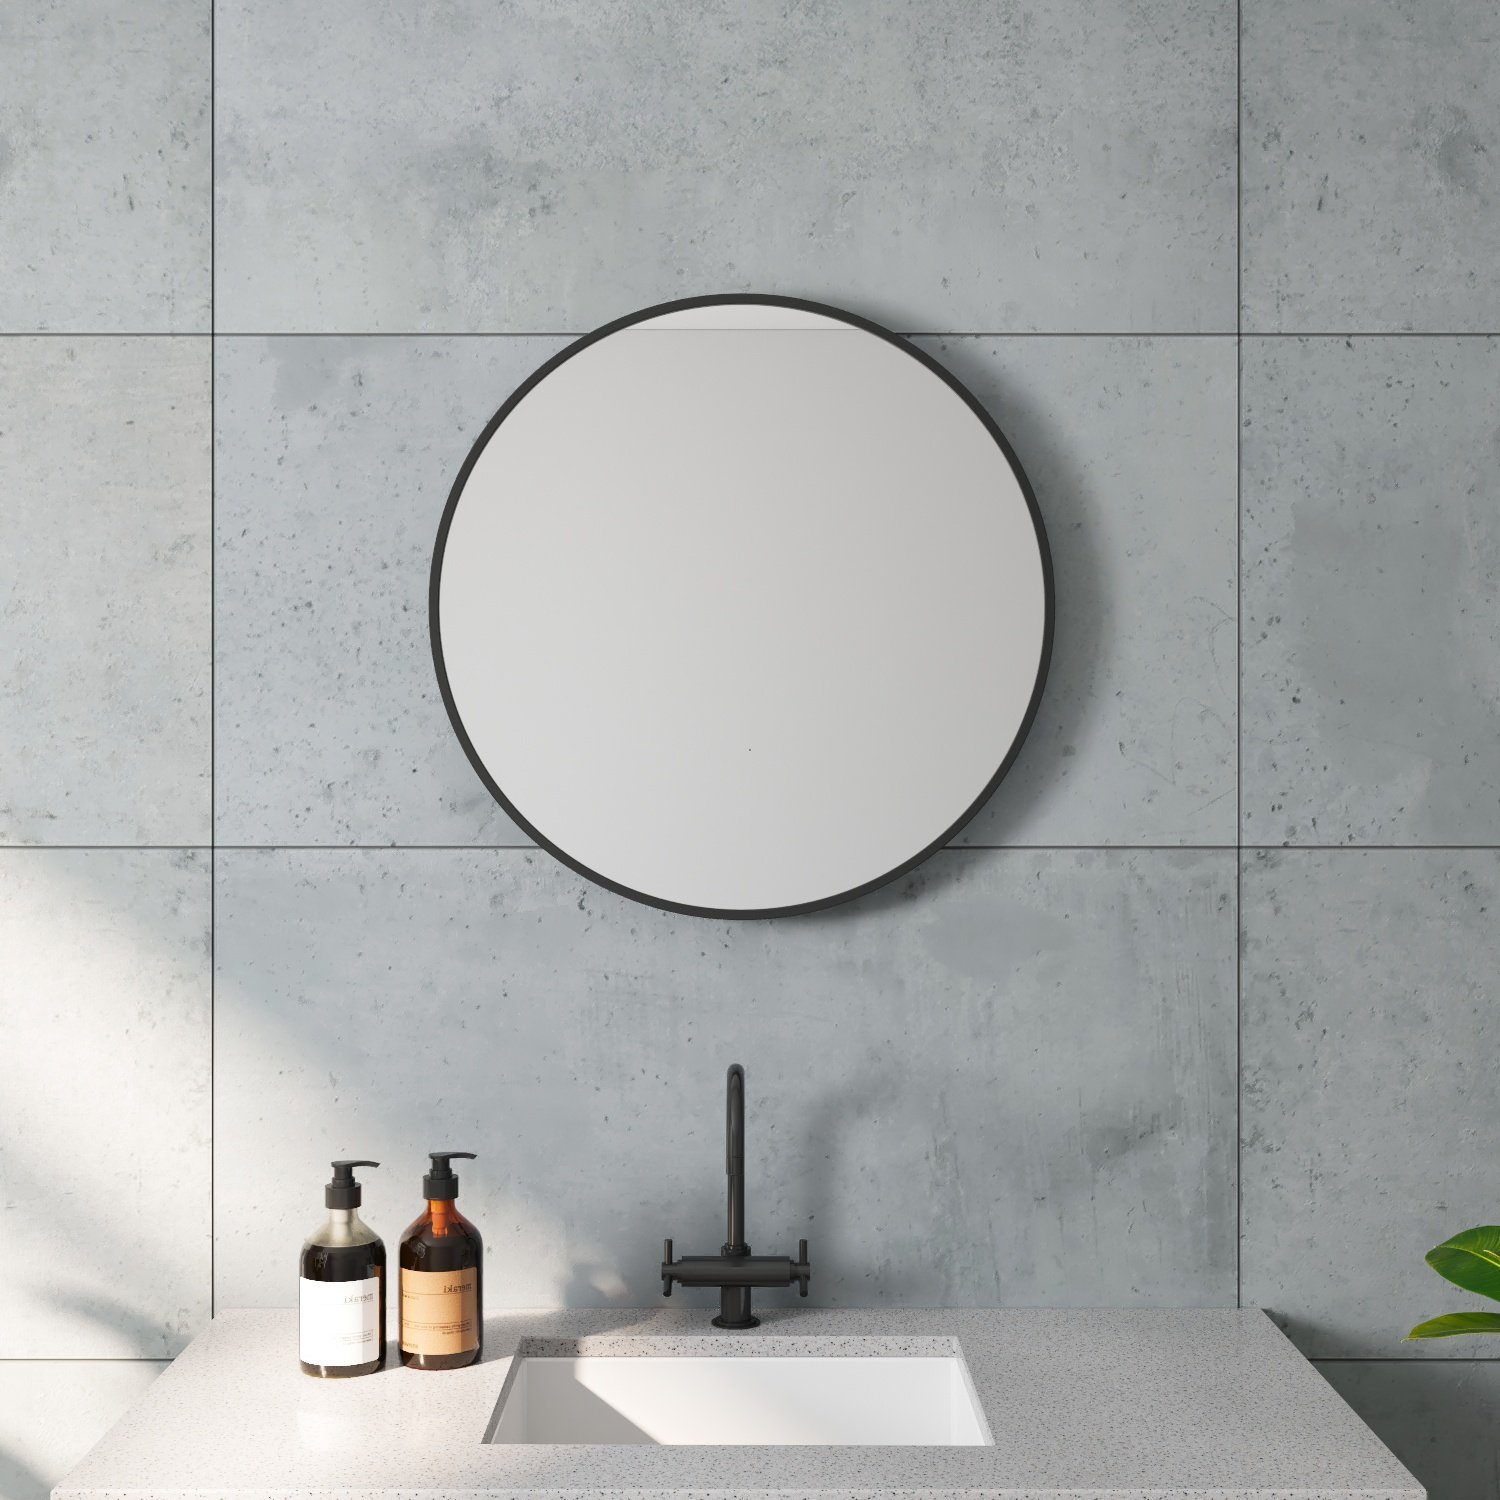 AQUABATOS Wandspiegel Badspiegel Badezimmerspiegel gold rund schwarz deko Spiegel vintage, 60x60 cm Aluminiumrahmen Wandmontage inkl. Befestigungsmaterial schwarz matt